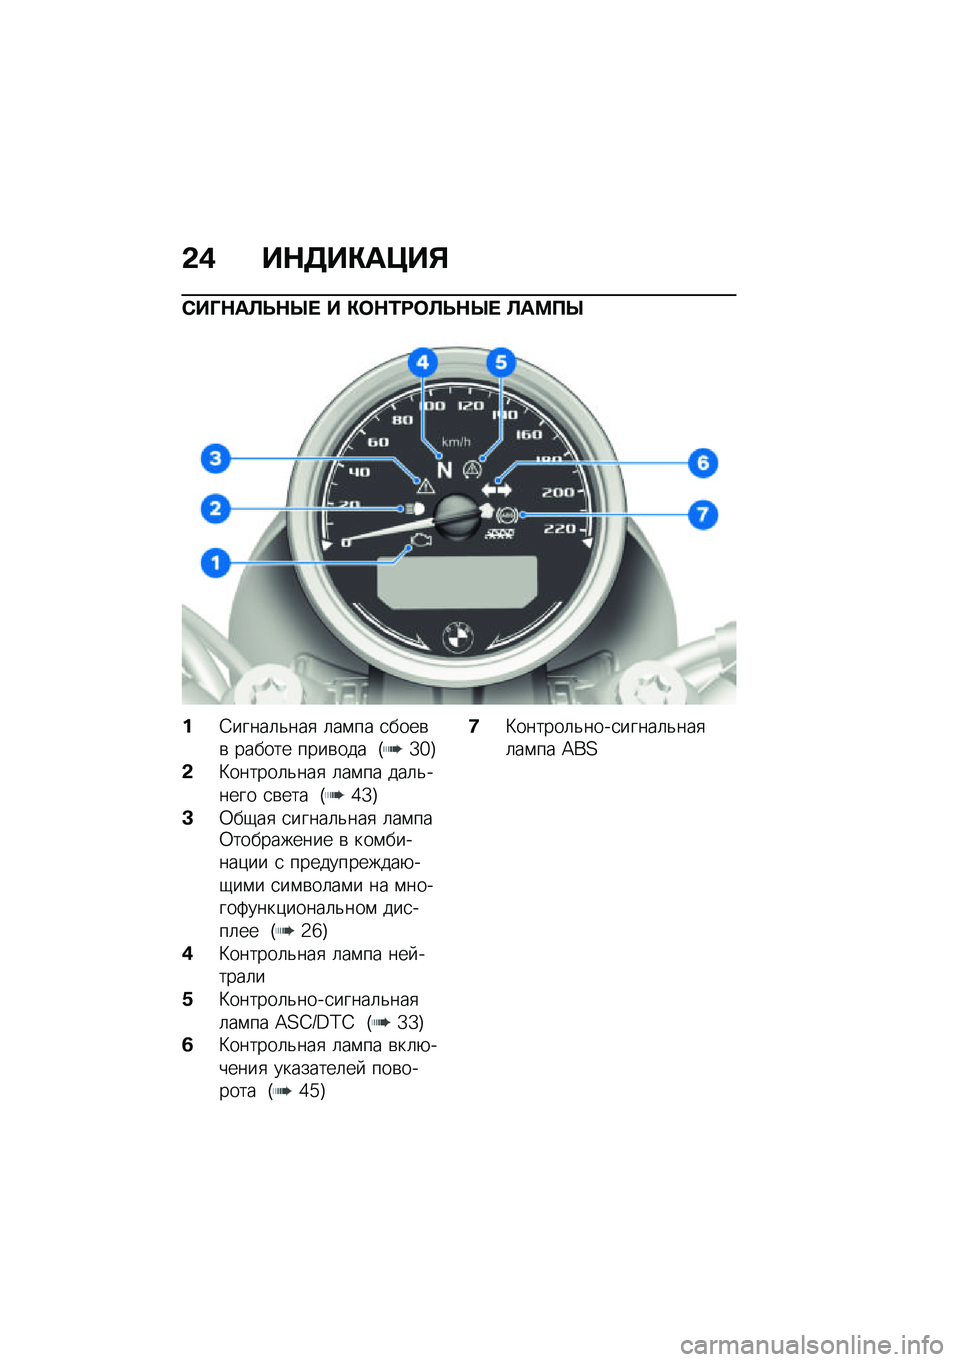 BMW MOTORRAD R NINE T SCRAMBLER 2021  Руководство по эксплуатации (in Russian) �&�( ��$�3��"��=��%
�)��O�$��B�F�$�Q�  � �"�	�$�/�:�	�B�F�$�Q�  �B��<�?�Q
��4�����	�&���
 �	��\f�� �
����\b�\b ������ ����\b��� �G�Z�_�H
�&�L������	�&���
 �	��